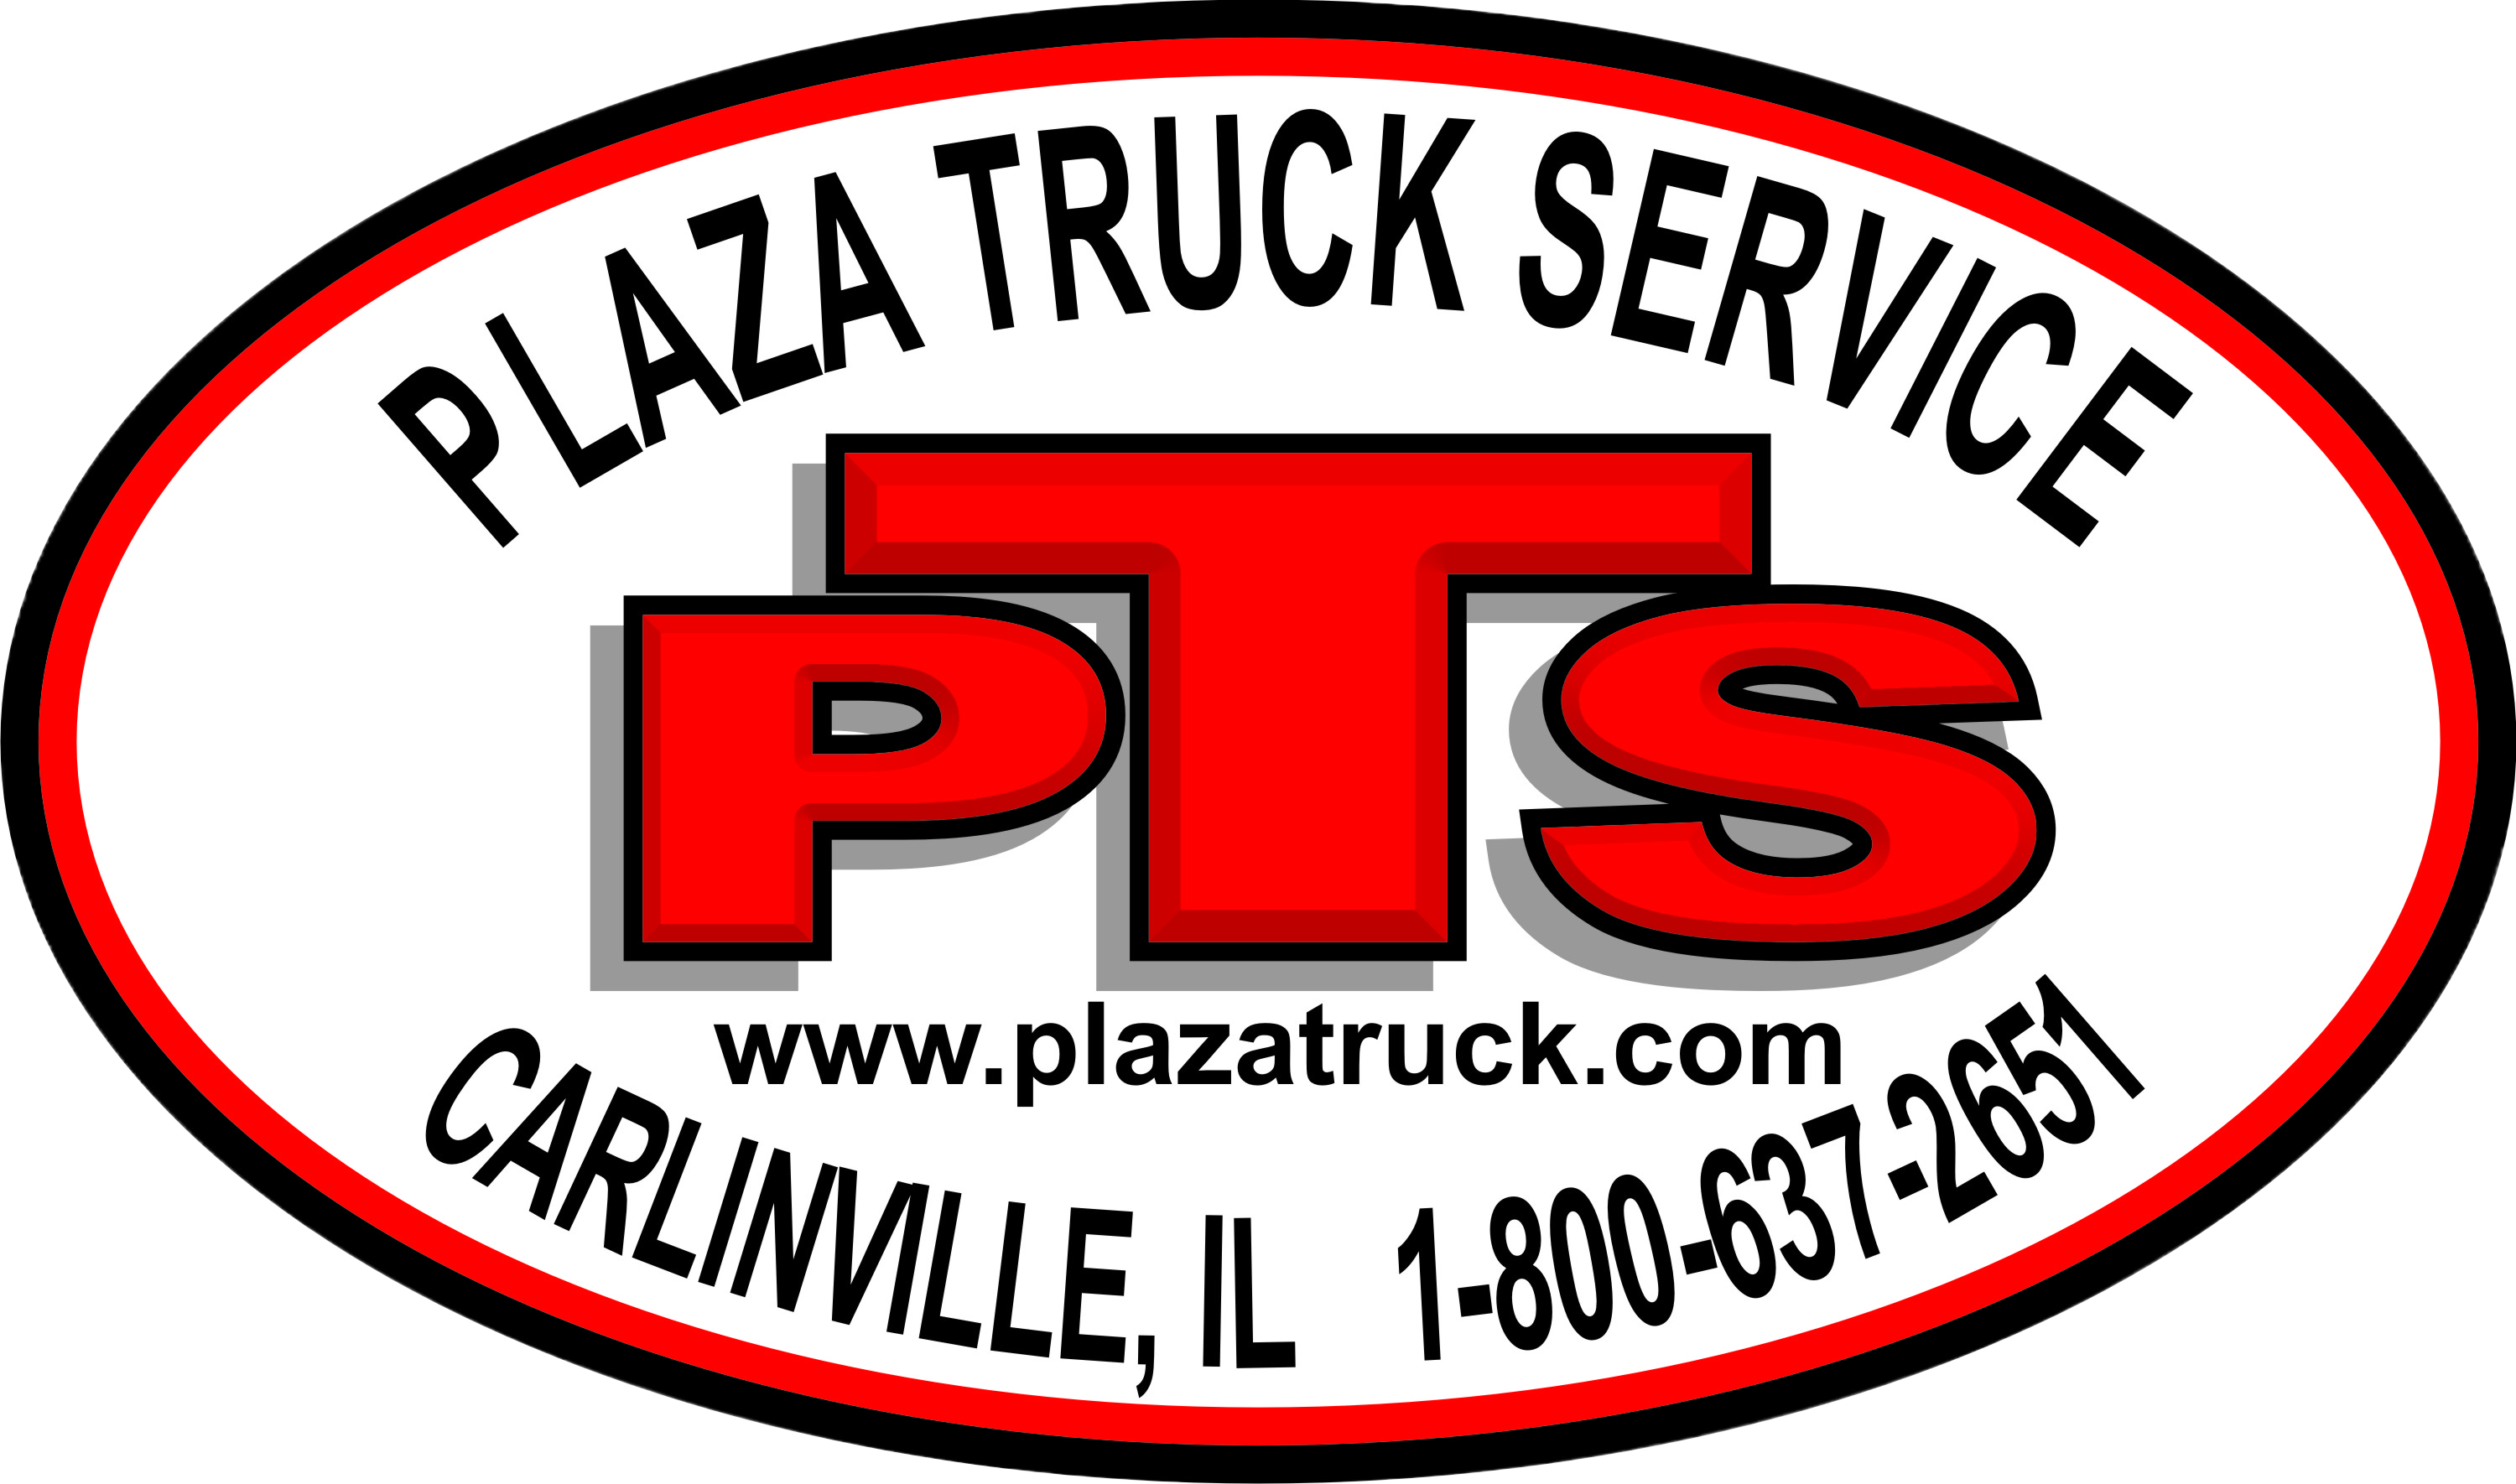 Plaza Truck Service